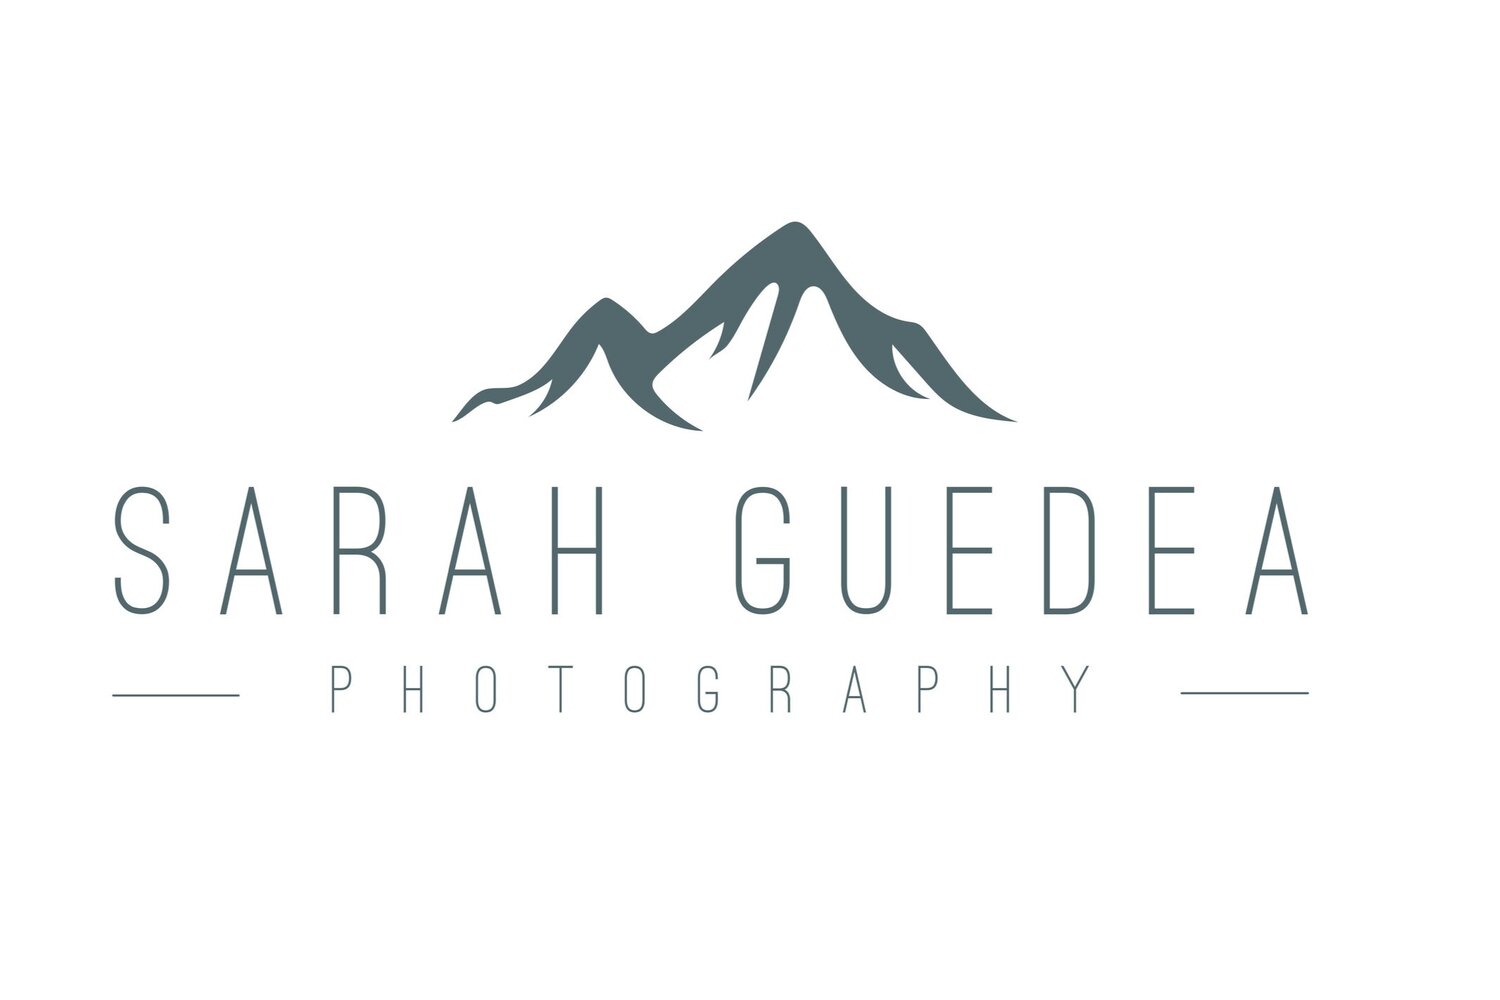 Sarah Guedea Photography